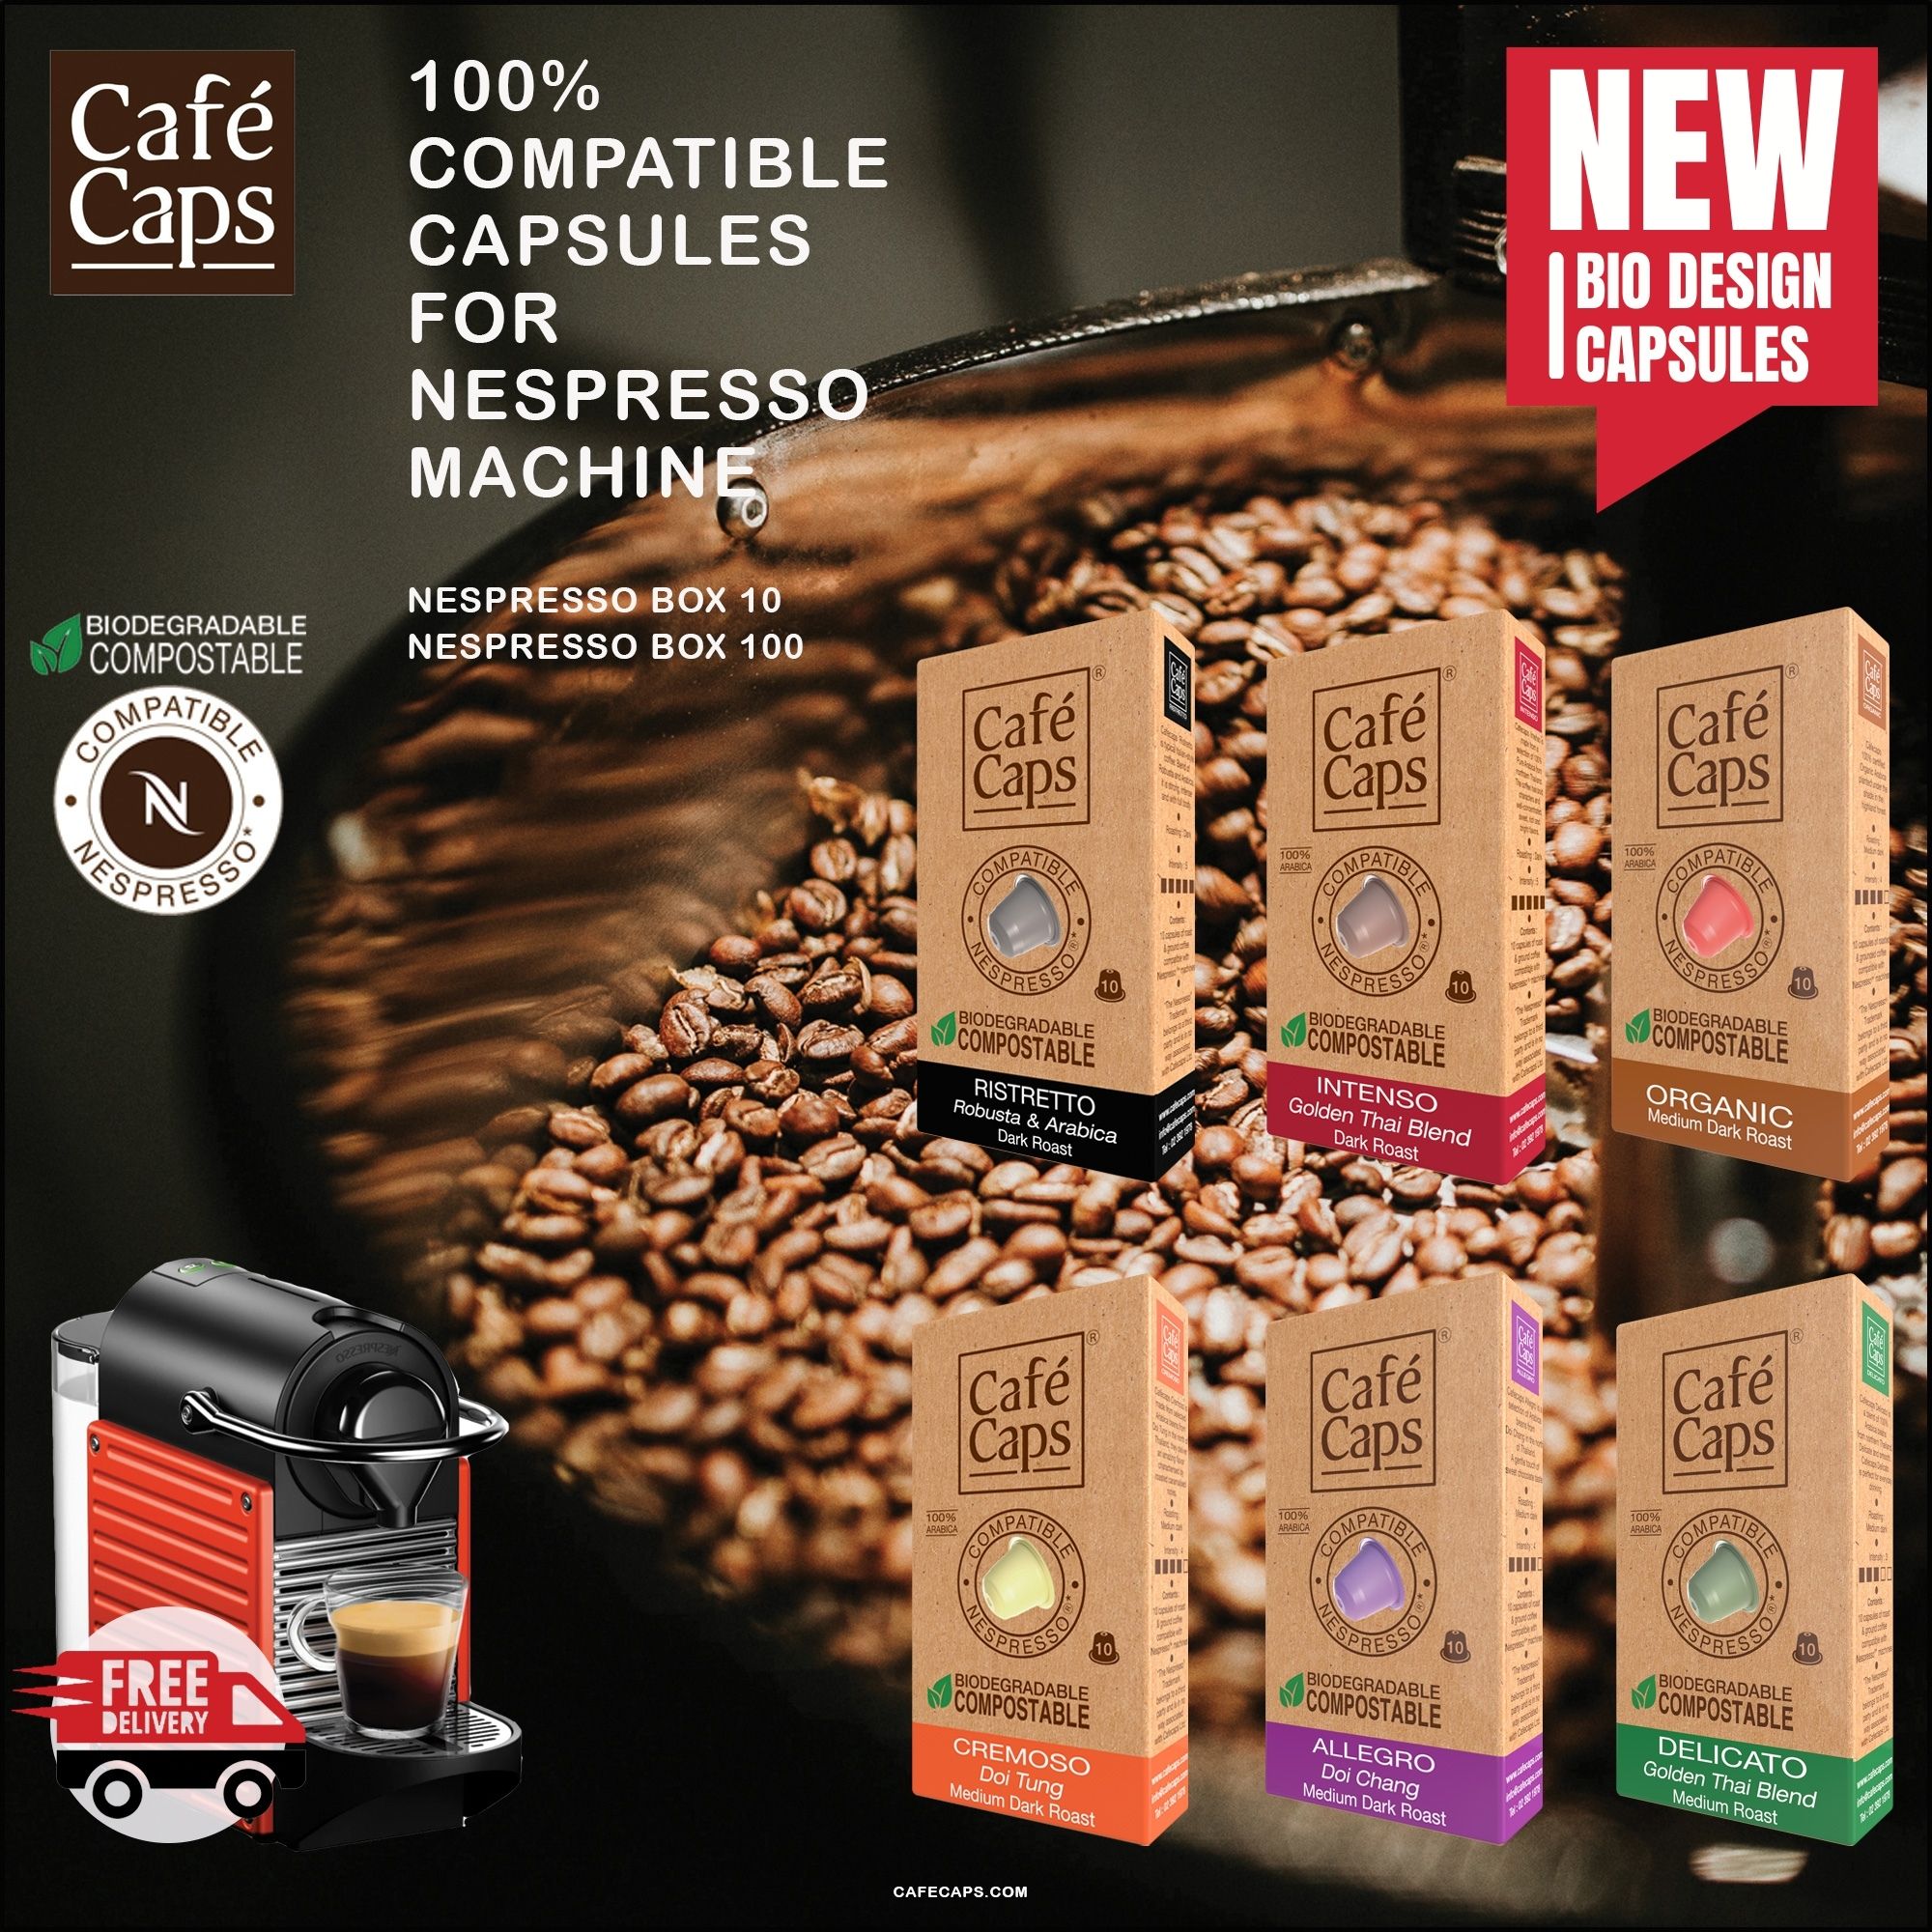 รูปภาพของ Cafecaps - แคปซูลกาแฟ Nespresso Compatible Signature Brazil (3กล่อง X 10 แคปซูล) - กาแฟคั่วกลาง- เทสติ้งโน๊ต ถั่ว, ช็อคโกแลตพร้อมโน้ตชิมรสเปรี้ยวอ่อน ๆ  - แคปซูลกาแฟใช้ได้กับเครื่อง Nespresso เท่านั้น